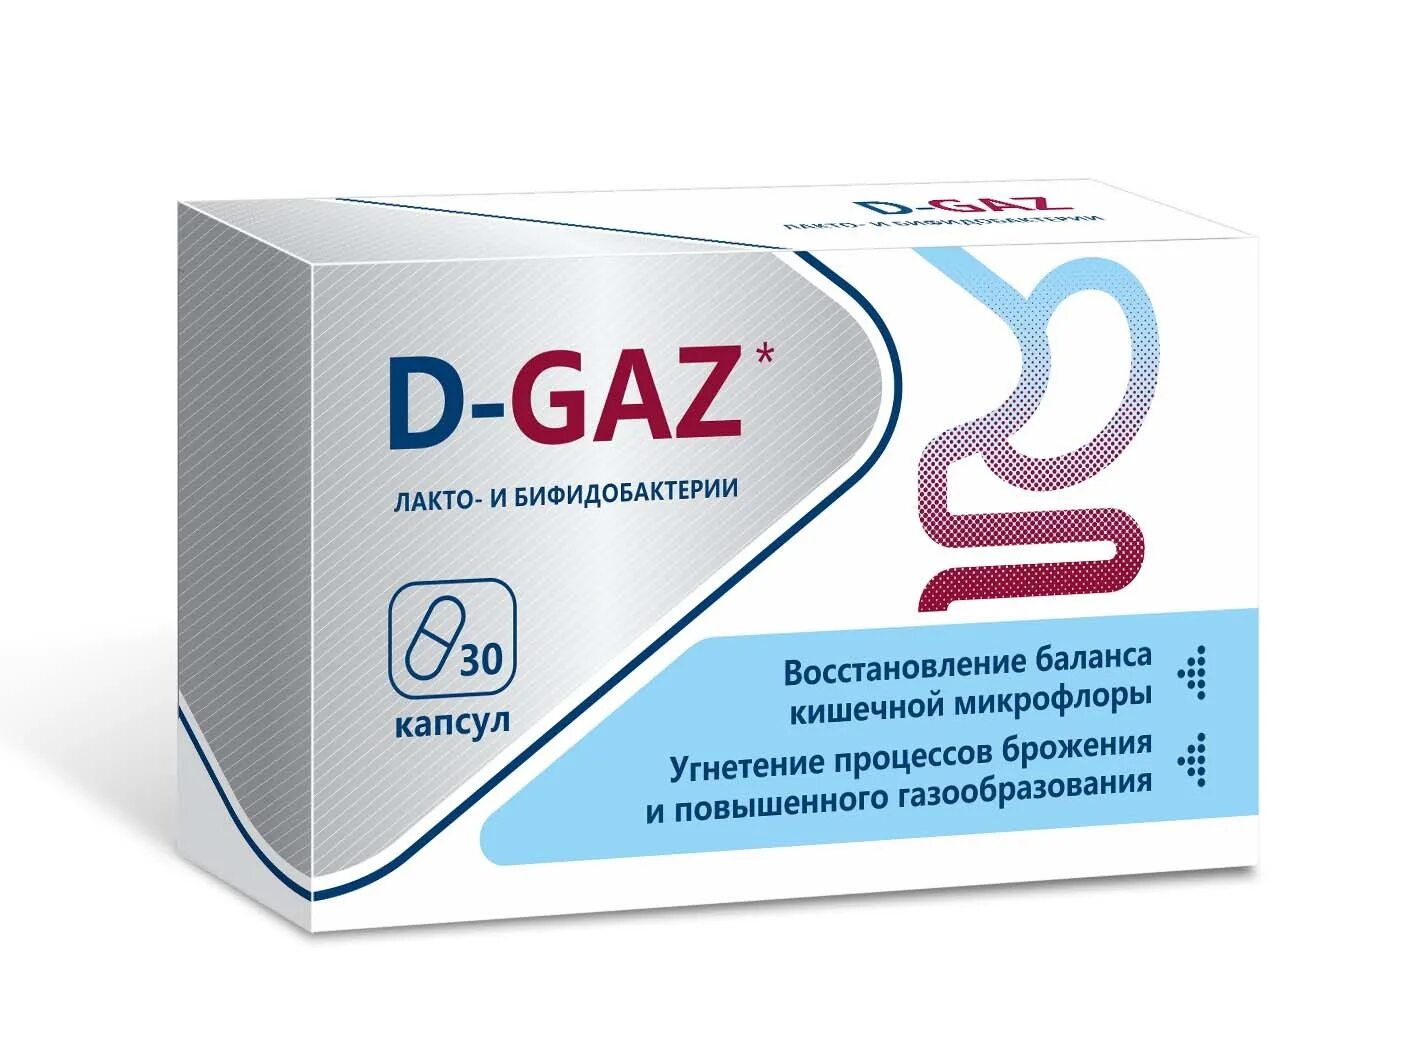 Д-ГАЗ синбиотик при вздутии живота капс. D-gaz капсулы. Д-ГАЗ лакто и бифидобактерии. D gaz лакто и бифидобактерии.